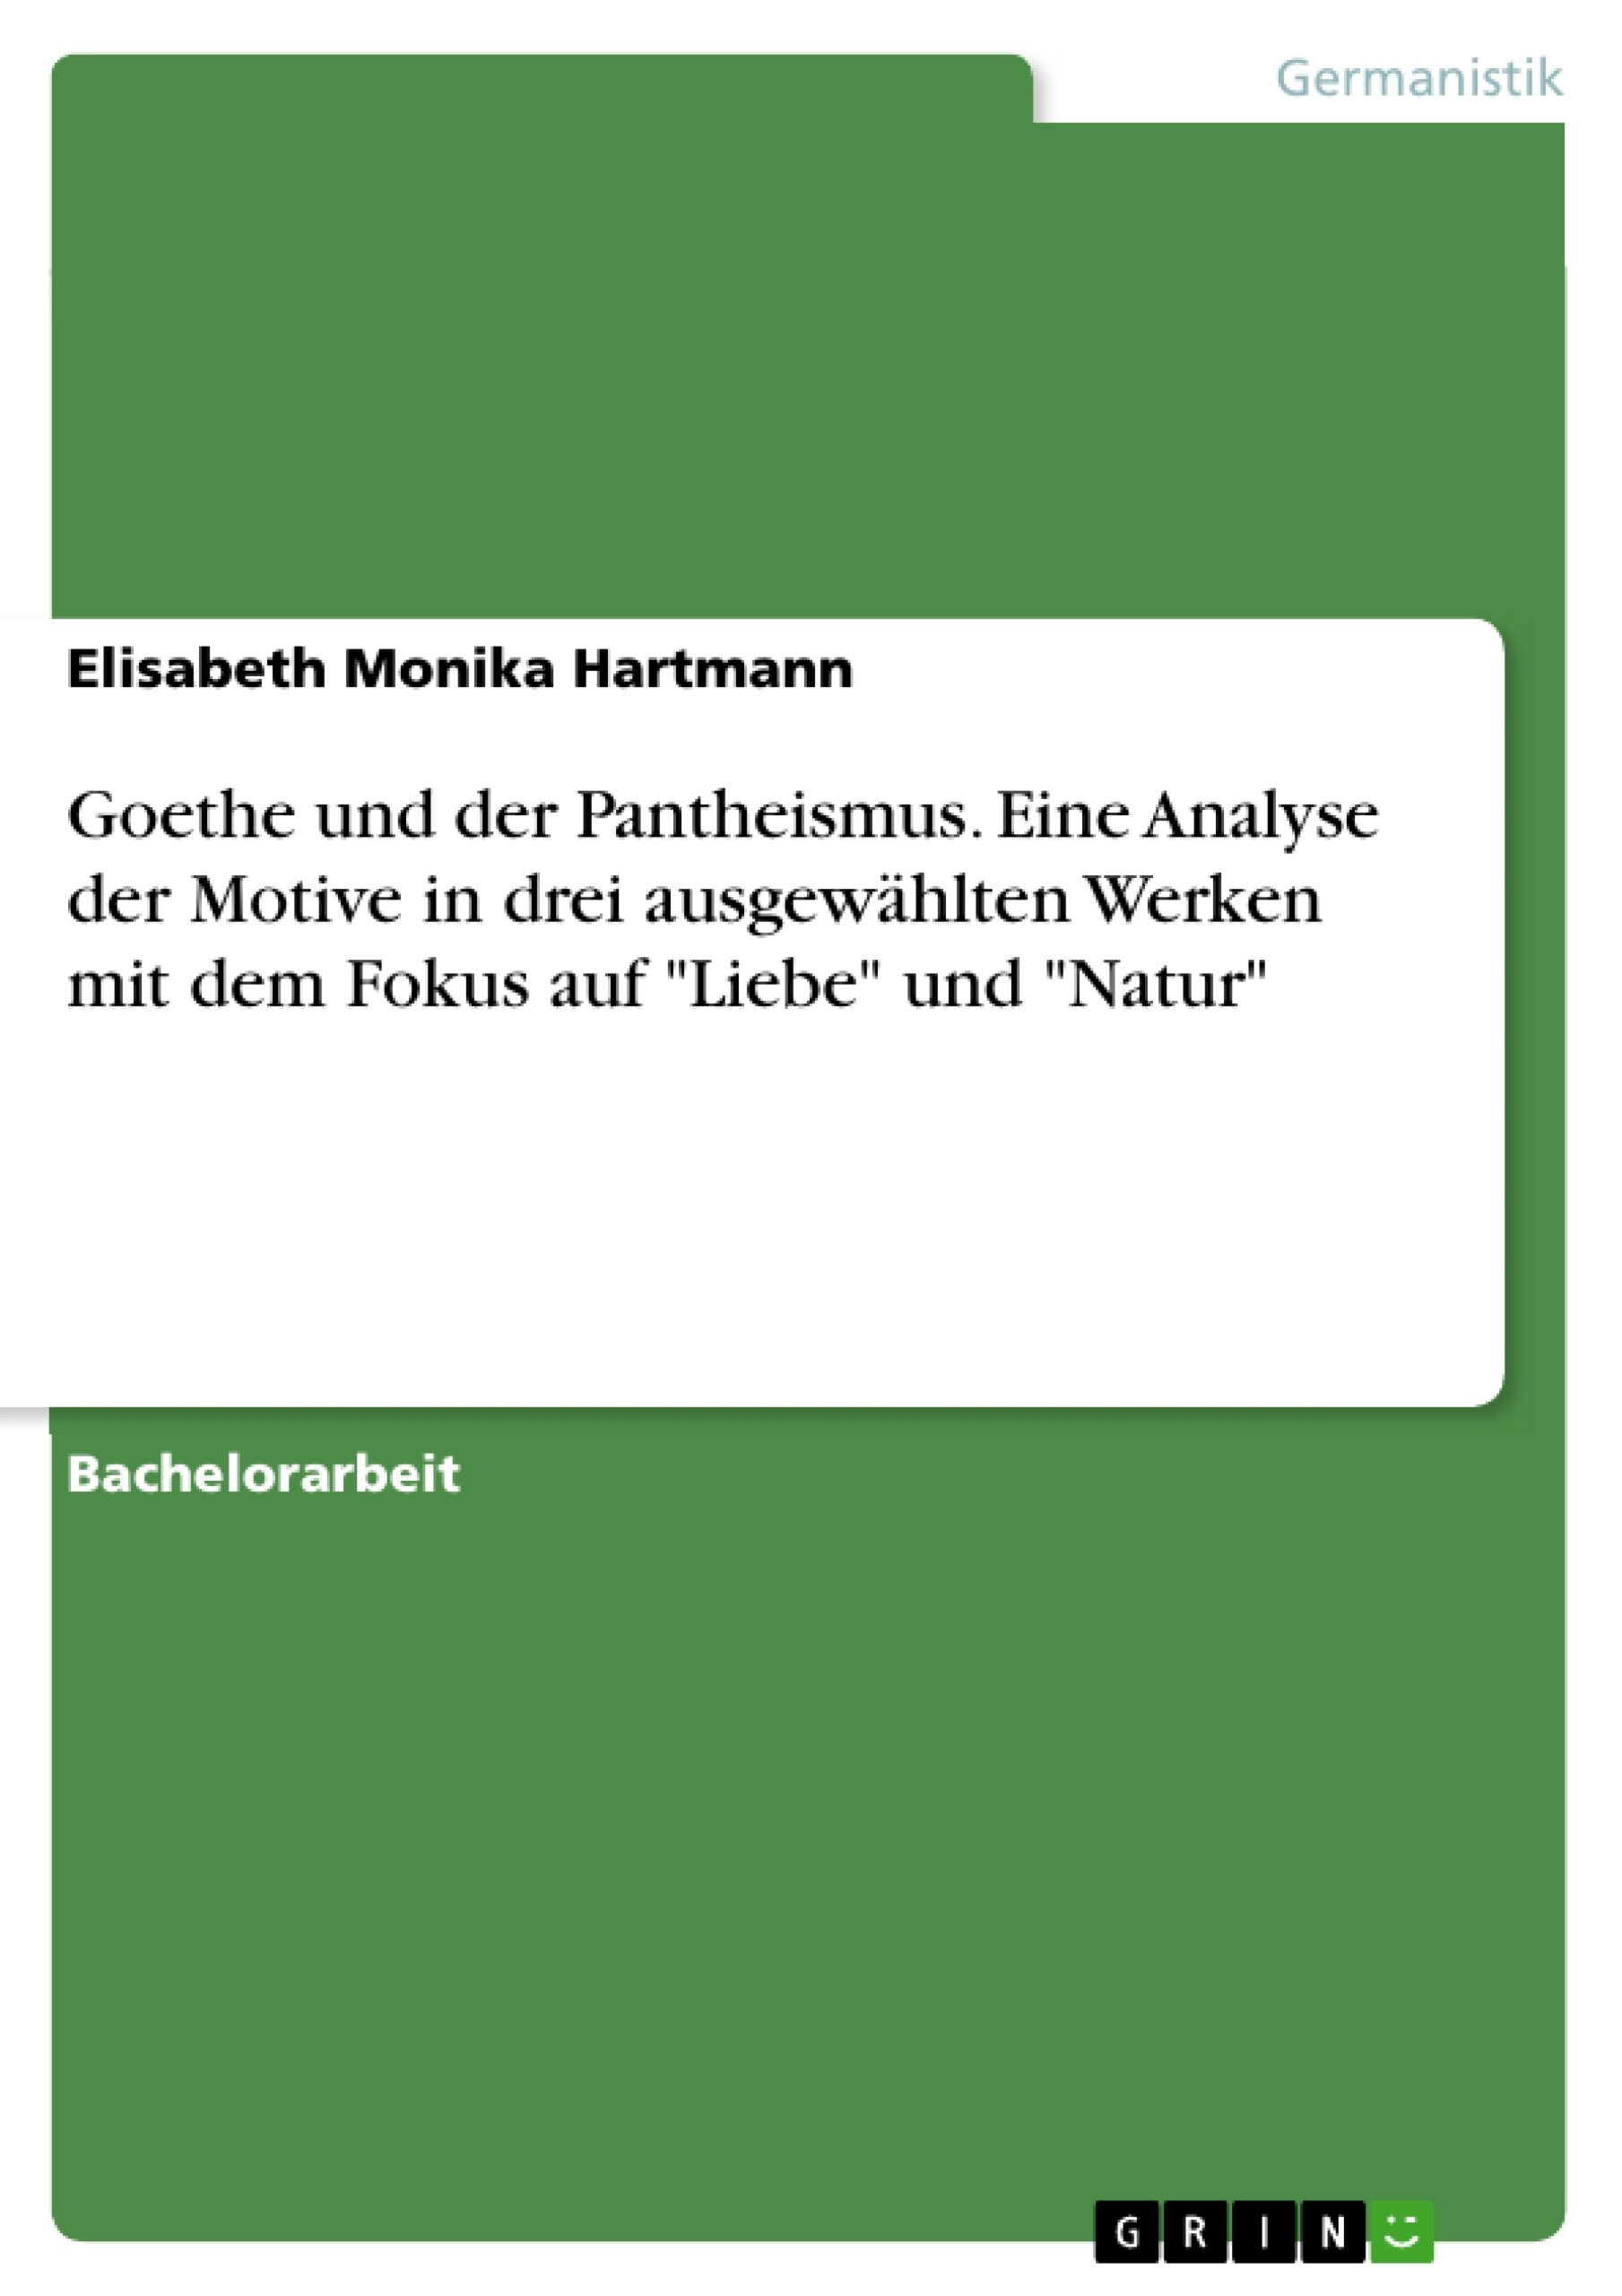 Título: Goethe und der Pantheismus. Eine Analyse der Motive in drei ausgewählten Werken mit dem Fokus auf "Liebe" und "Natur"